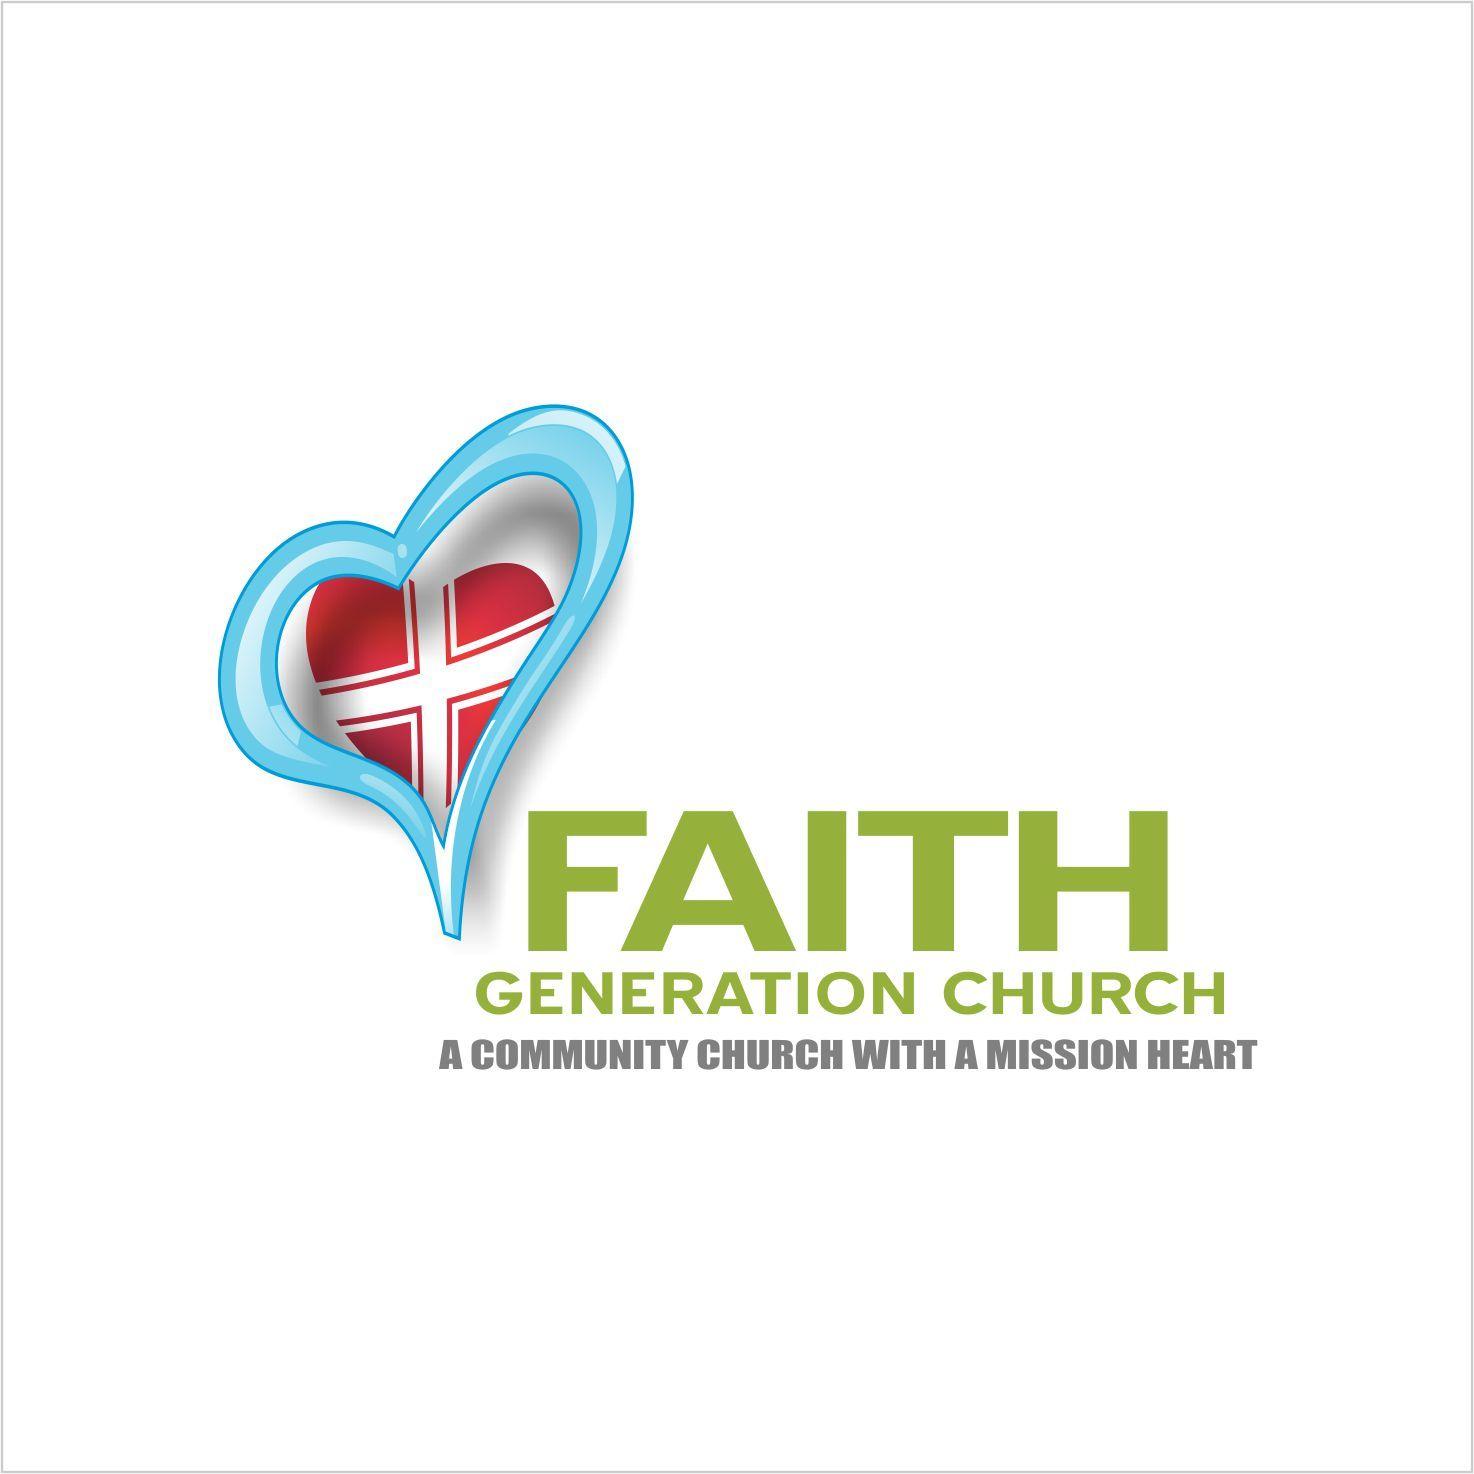 Tag Church Logo - Church Logo Design for Faith Generation Church tag line.A